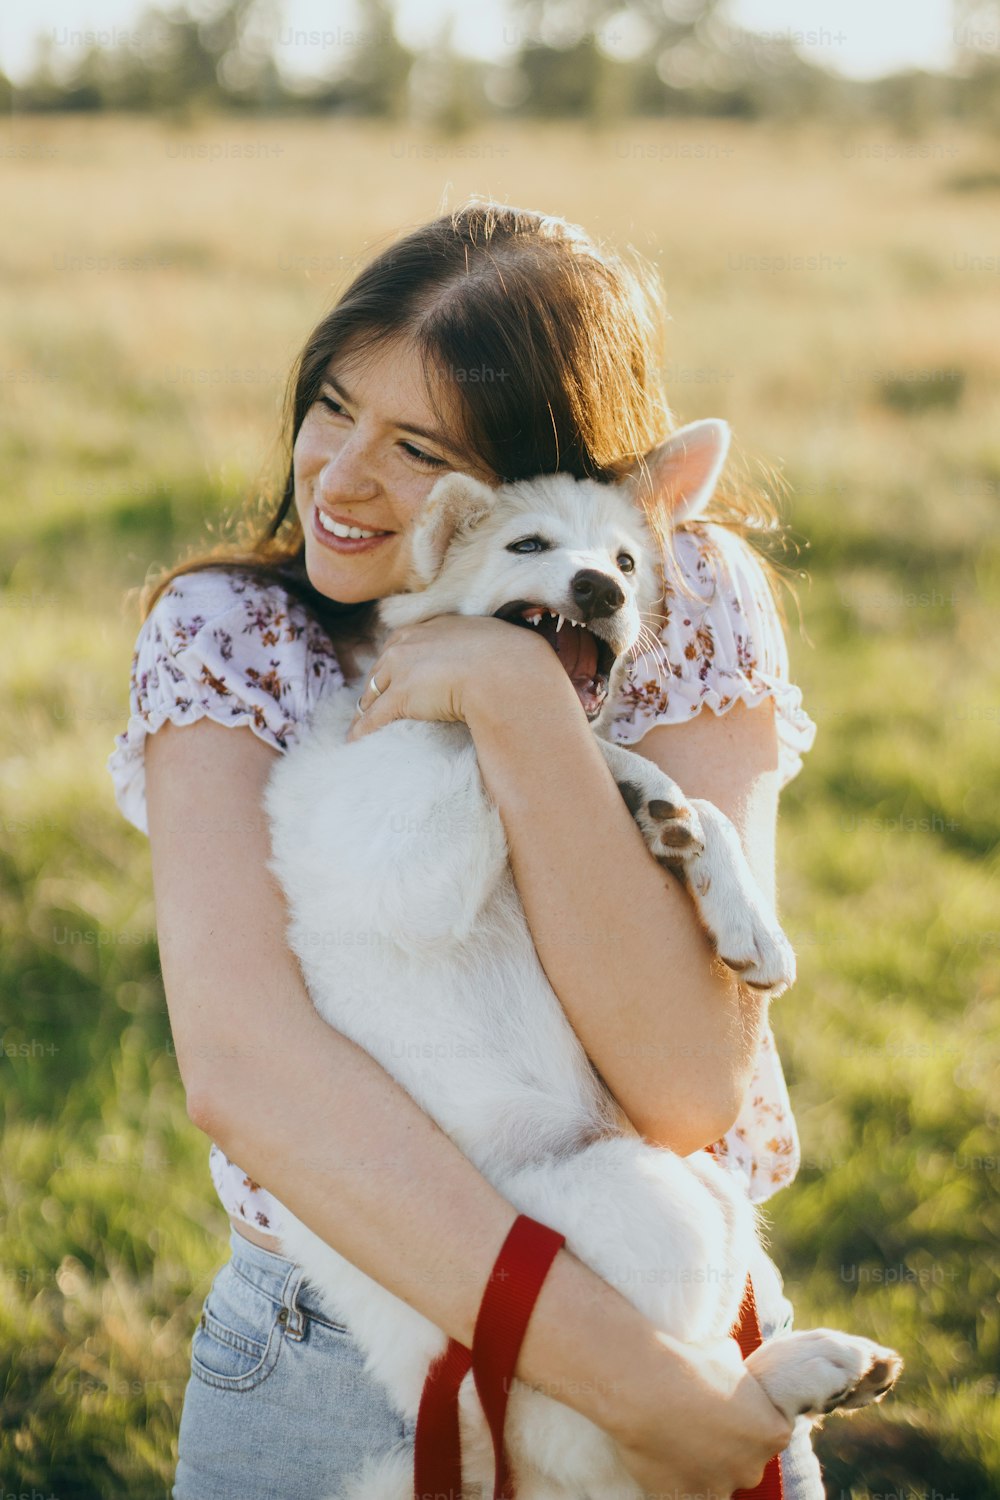 Mulher jovem elegante que abraça o filhote de cachorro branco bonito na luz quente do pôr do sol no prado de verão. Menina feliz segurando cachorrinho fofo brincalhão. Lindo momento engraçado. Conceito de adoção